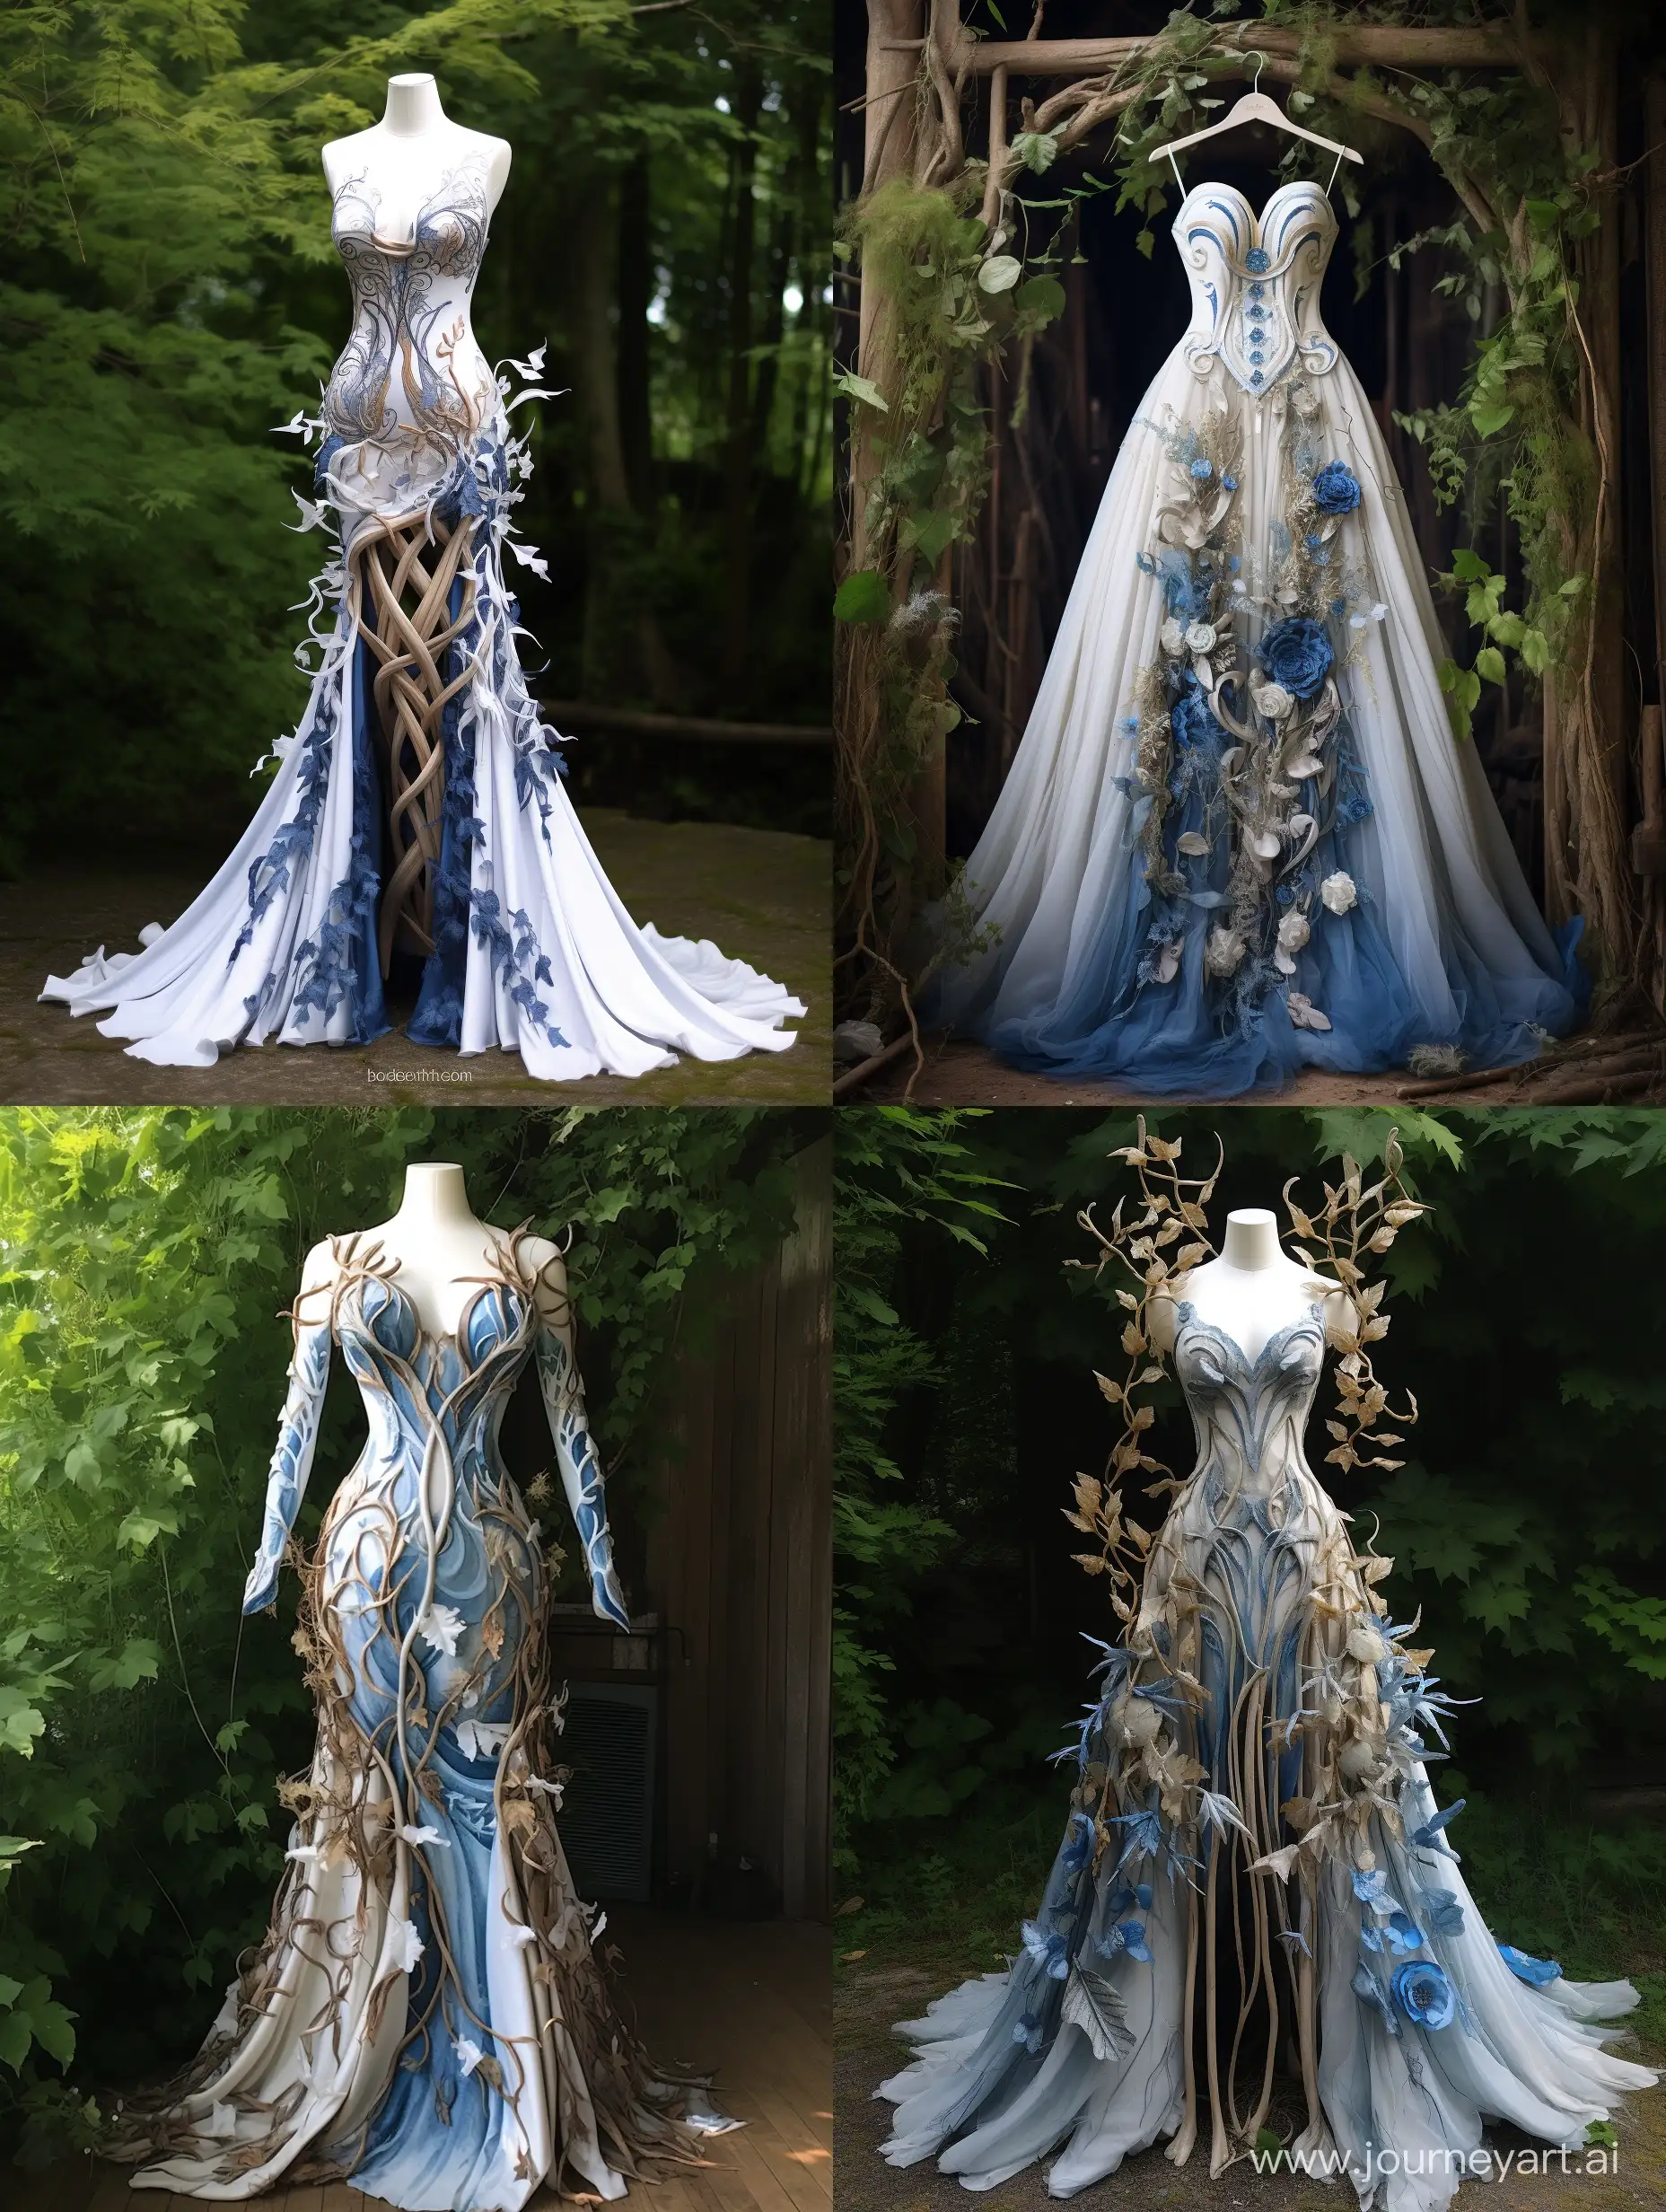 Fantasy-Celtic-Style-Blue-Leaf-Dress-Made-of-Plants